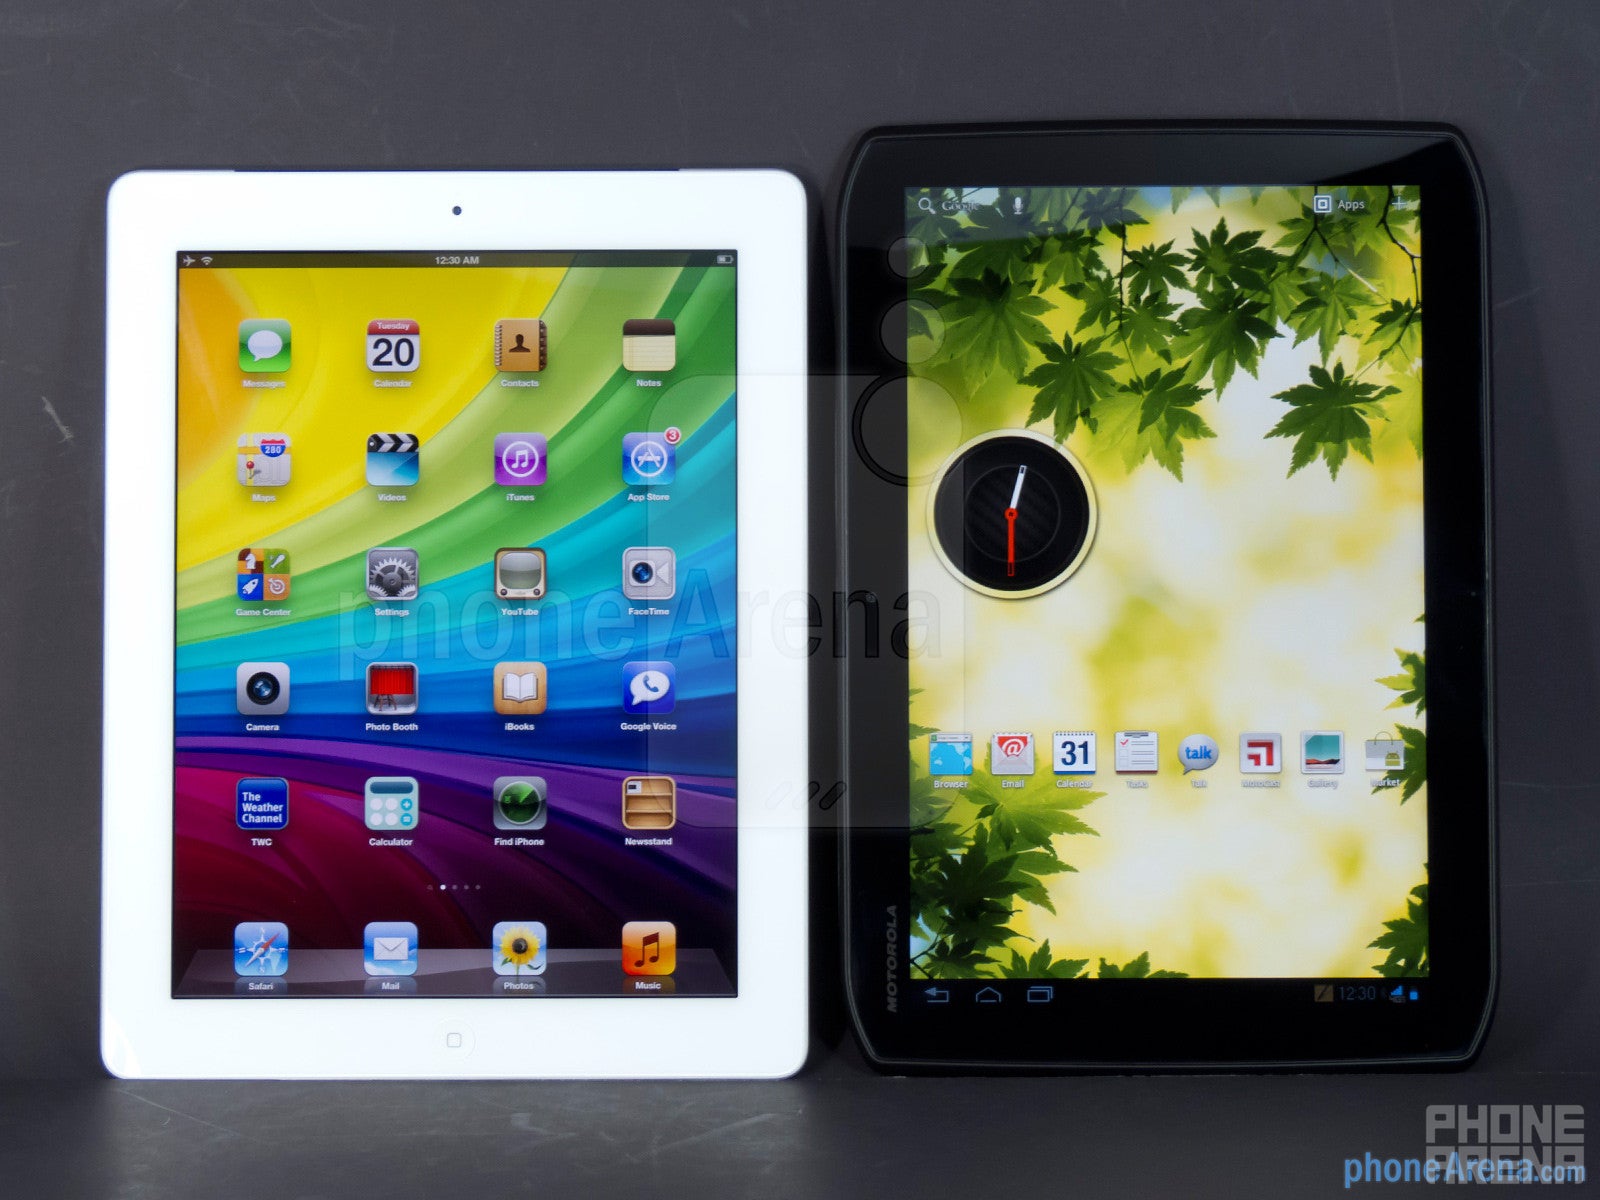 Apple iPad 3 vs Motorola DROID XYBOARD 10.1